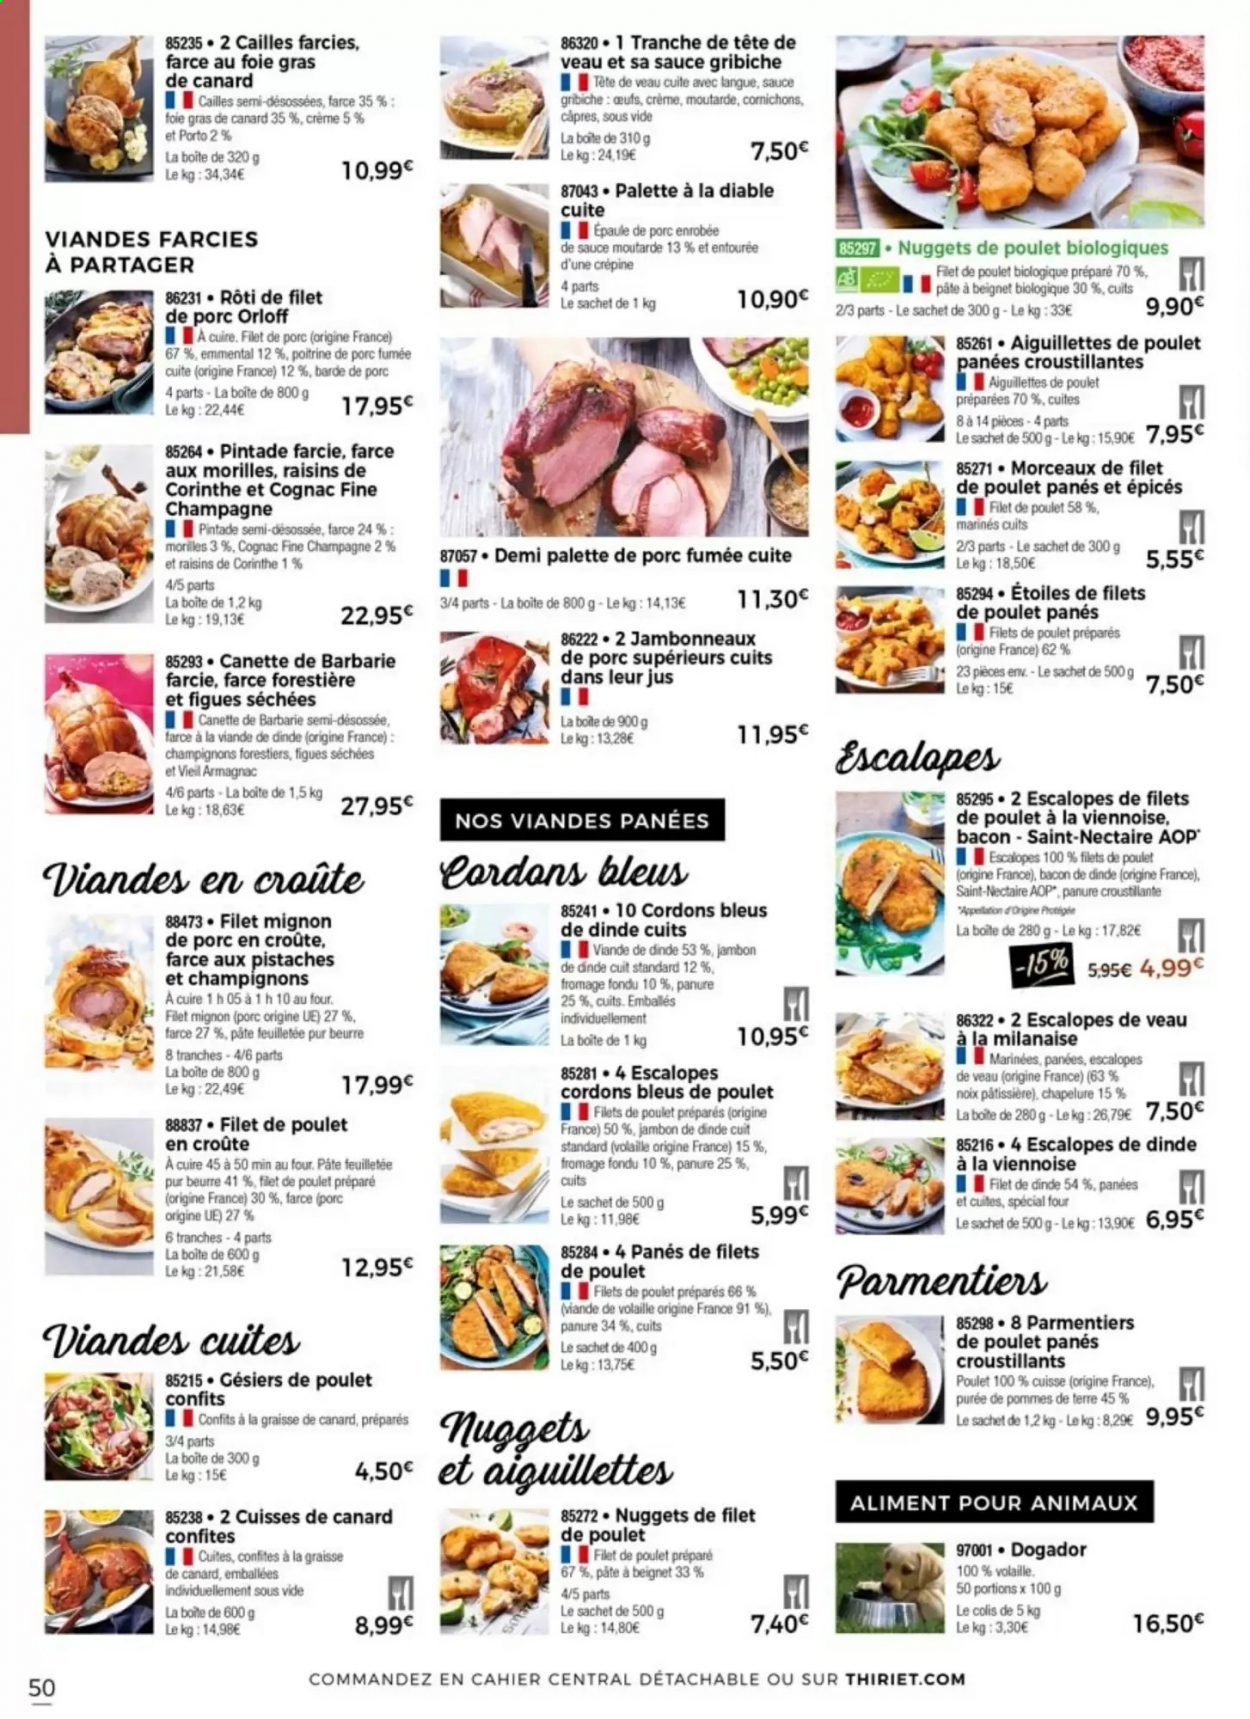 thumbnail - Catalogue Thiriet - 15/07/2021 - 09/08/2021 - Produits soldés - escalope, filet mignon, gésiers, poitrine de porc, palette de porc, palette à la diable, alcool, chapelure, filet de poulet, cailles, pintade farcie, cuisse de canard, viande de poulet, viande de dinde, escalope de dinde, escalope de poulet, viande de cailles, viande de veau, cordon bleu, nuggets de poulet, jambon, graisse de canard, pâte feuilletée, cornichons, champagne, armagnac, cognac. Page 50.